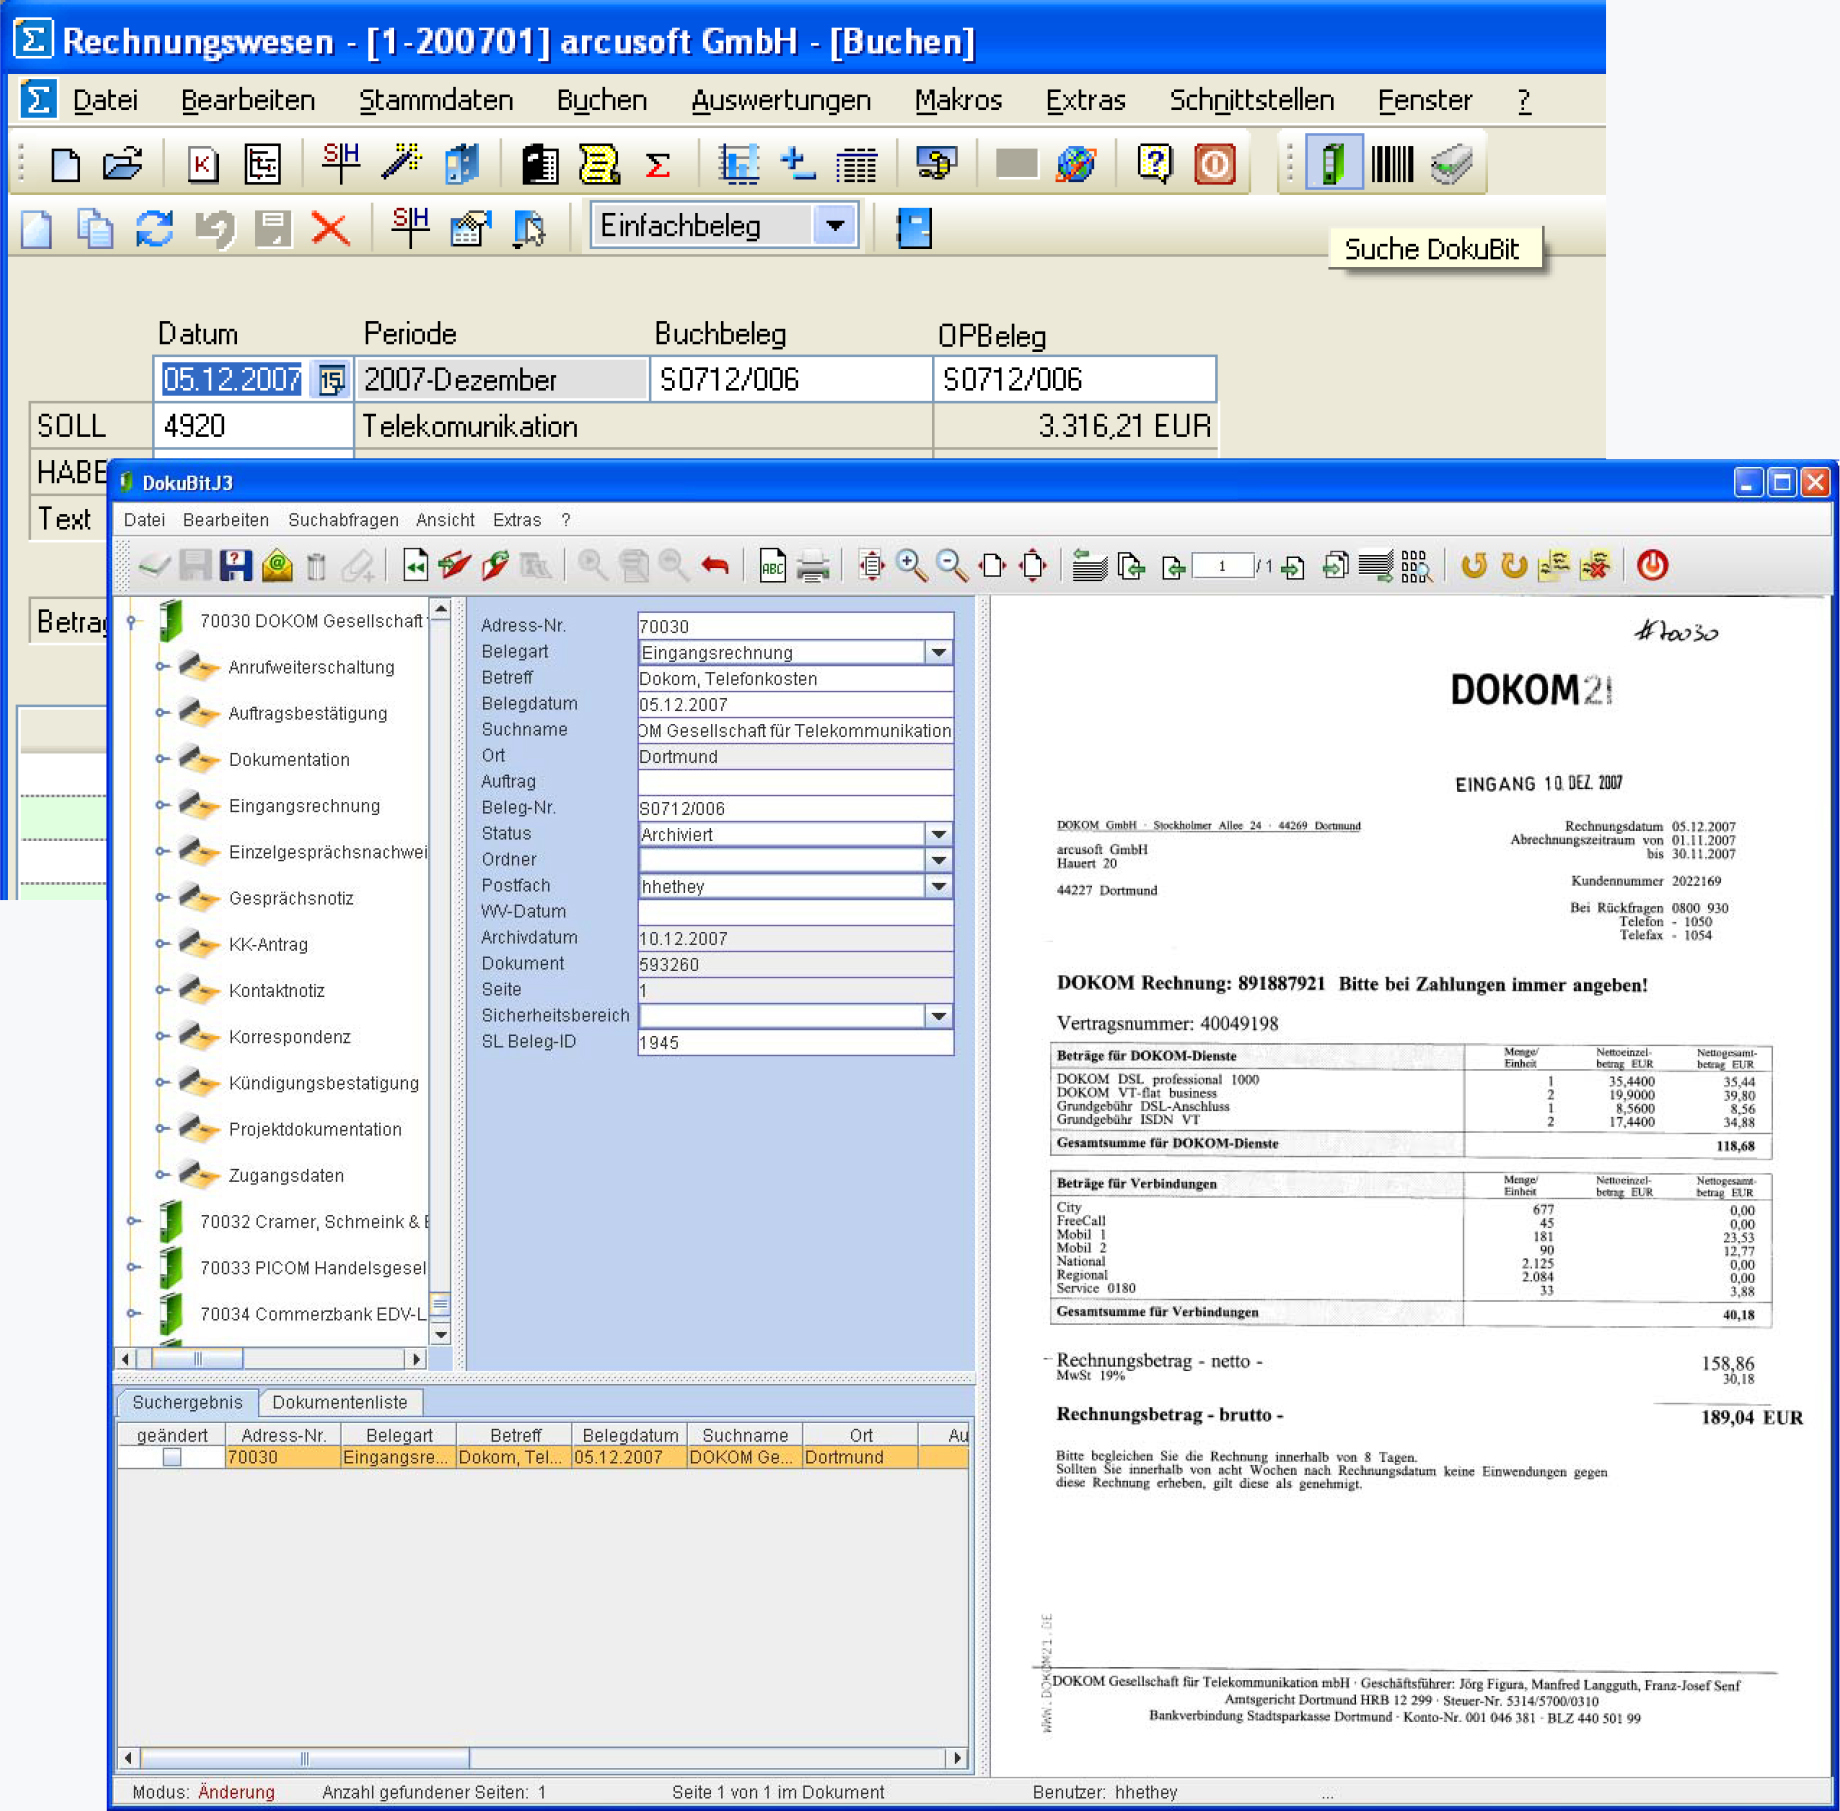 DSS Data System Service Netphen Siegen DokuBit Screen 03